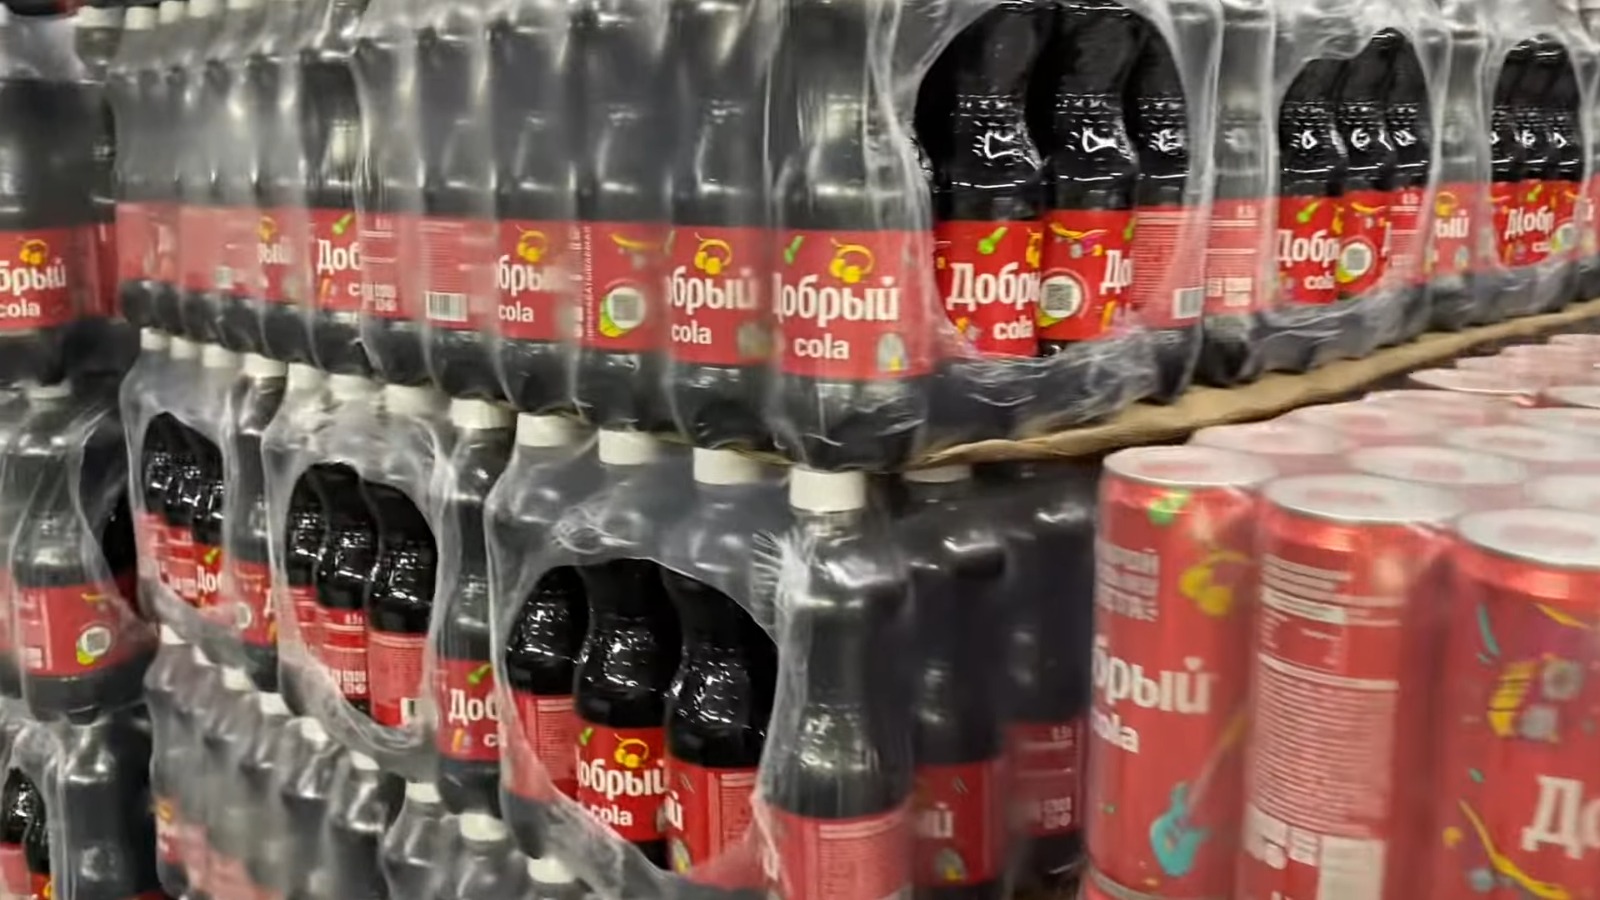 Ob es russische "Coca-Cola" im angekündigten Supermarkt geben wird, ist nicht bekannt. | Bildquelle: Periodico Cubano © Julmezza/YouTube | Bilder sind in der Regel urheberrechtlich geschützt